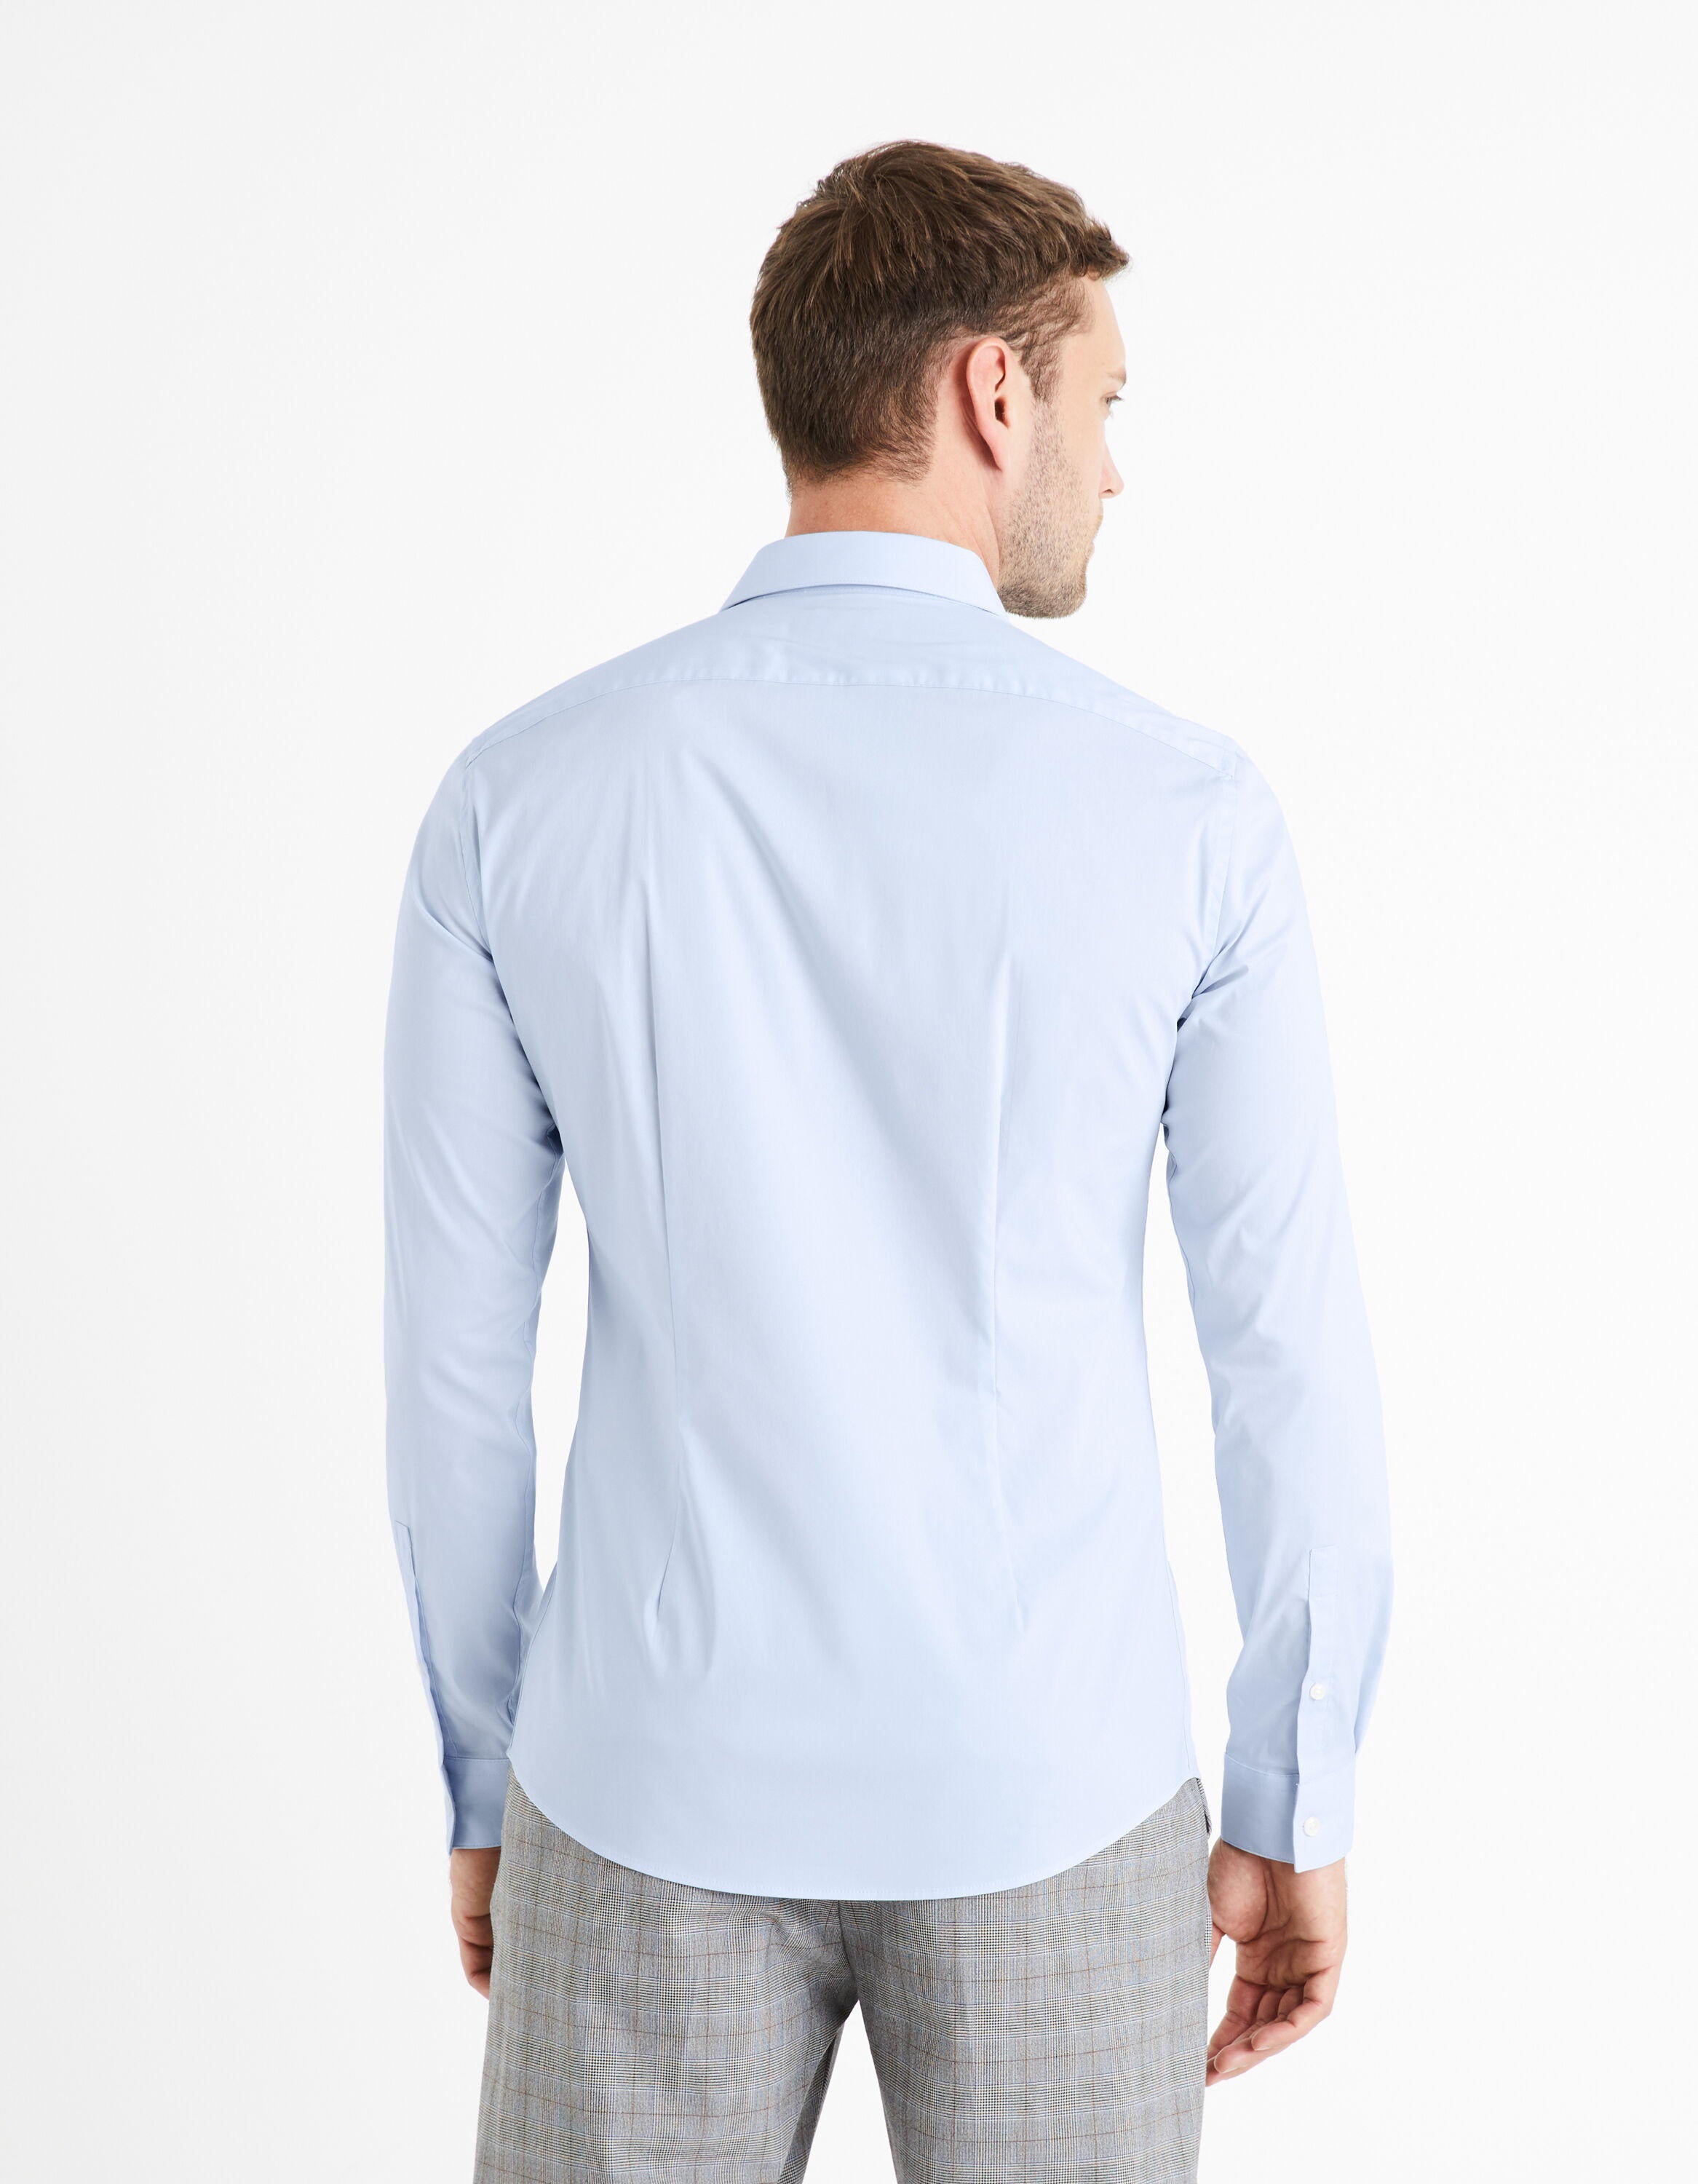 Extra Slim Stretch Cotton Shirt_VAXAVIER_LIGHT BLUE 01_04